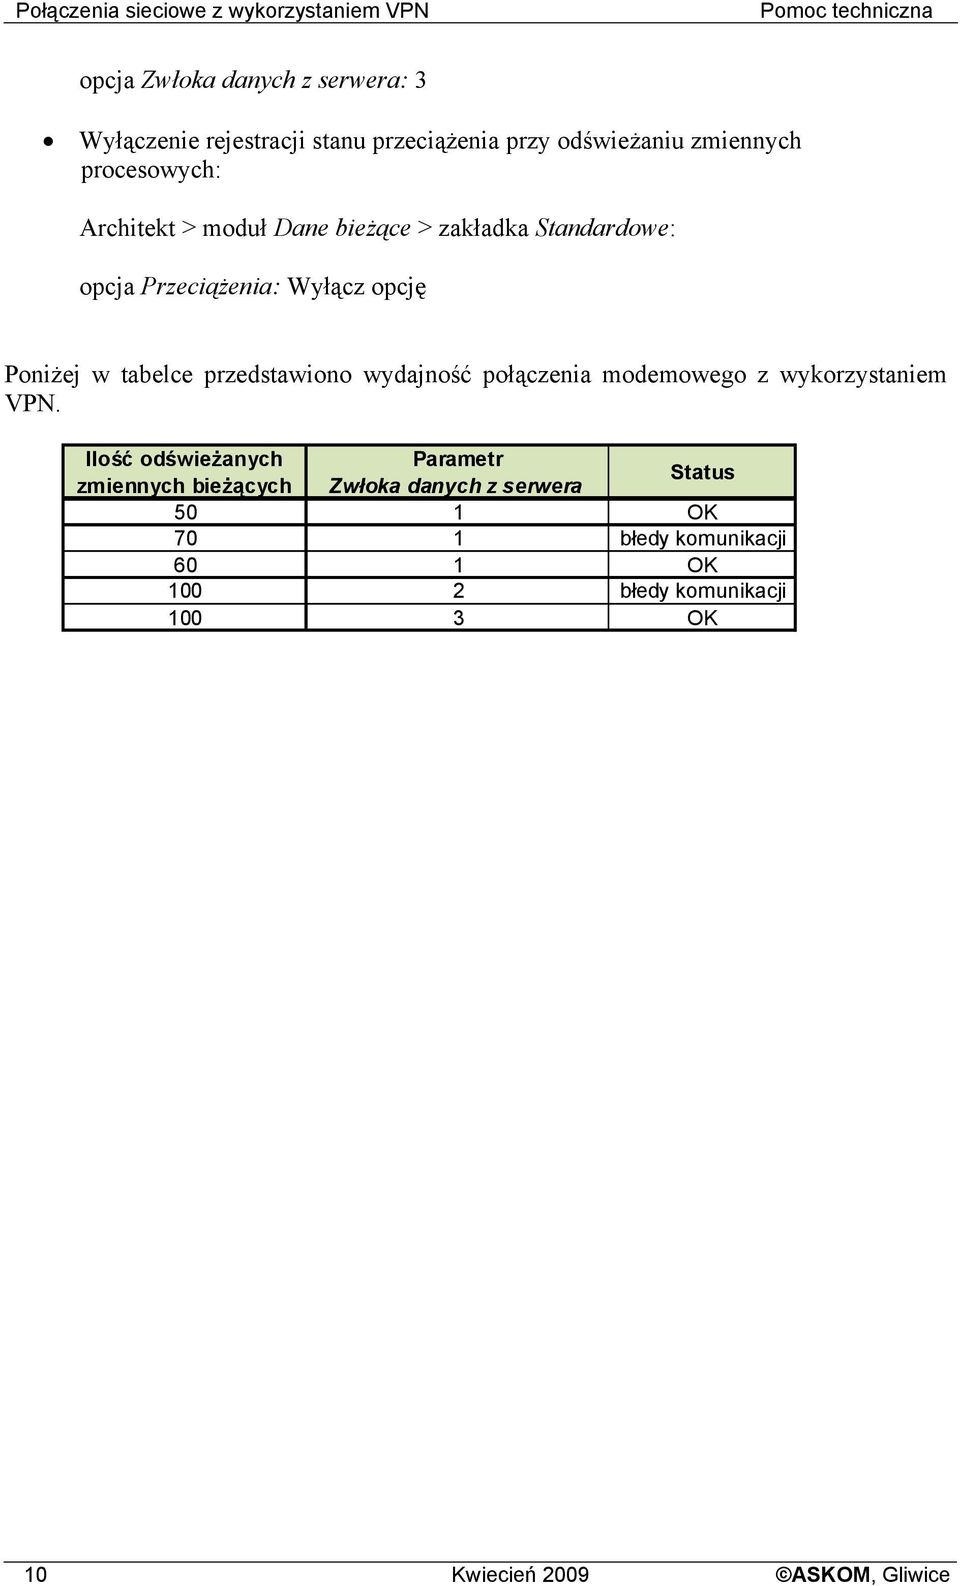 Poniżej w tabelce przedstawiono wydajność połączenia modemowego z wykorzystaniem VPN.